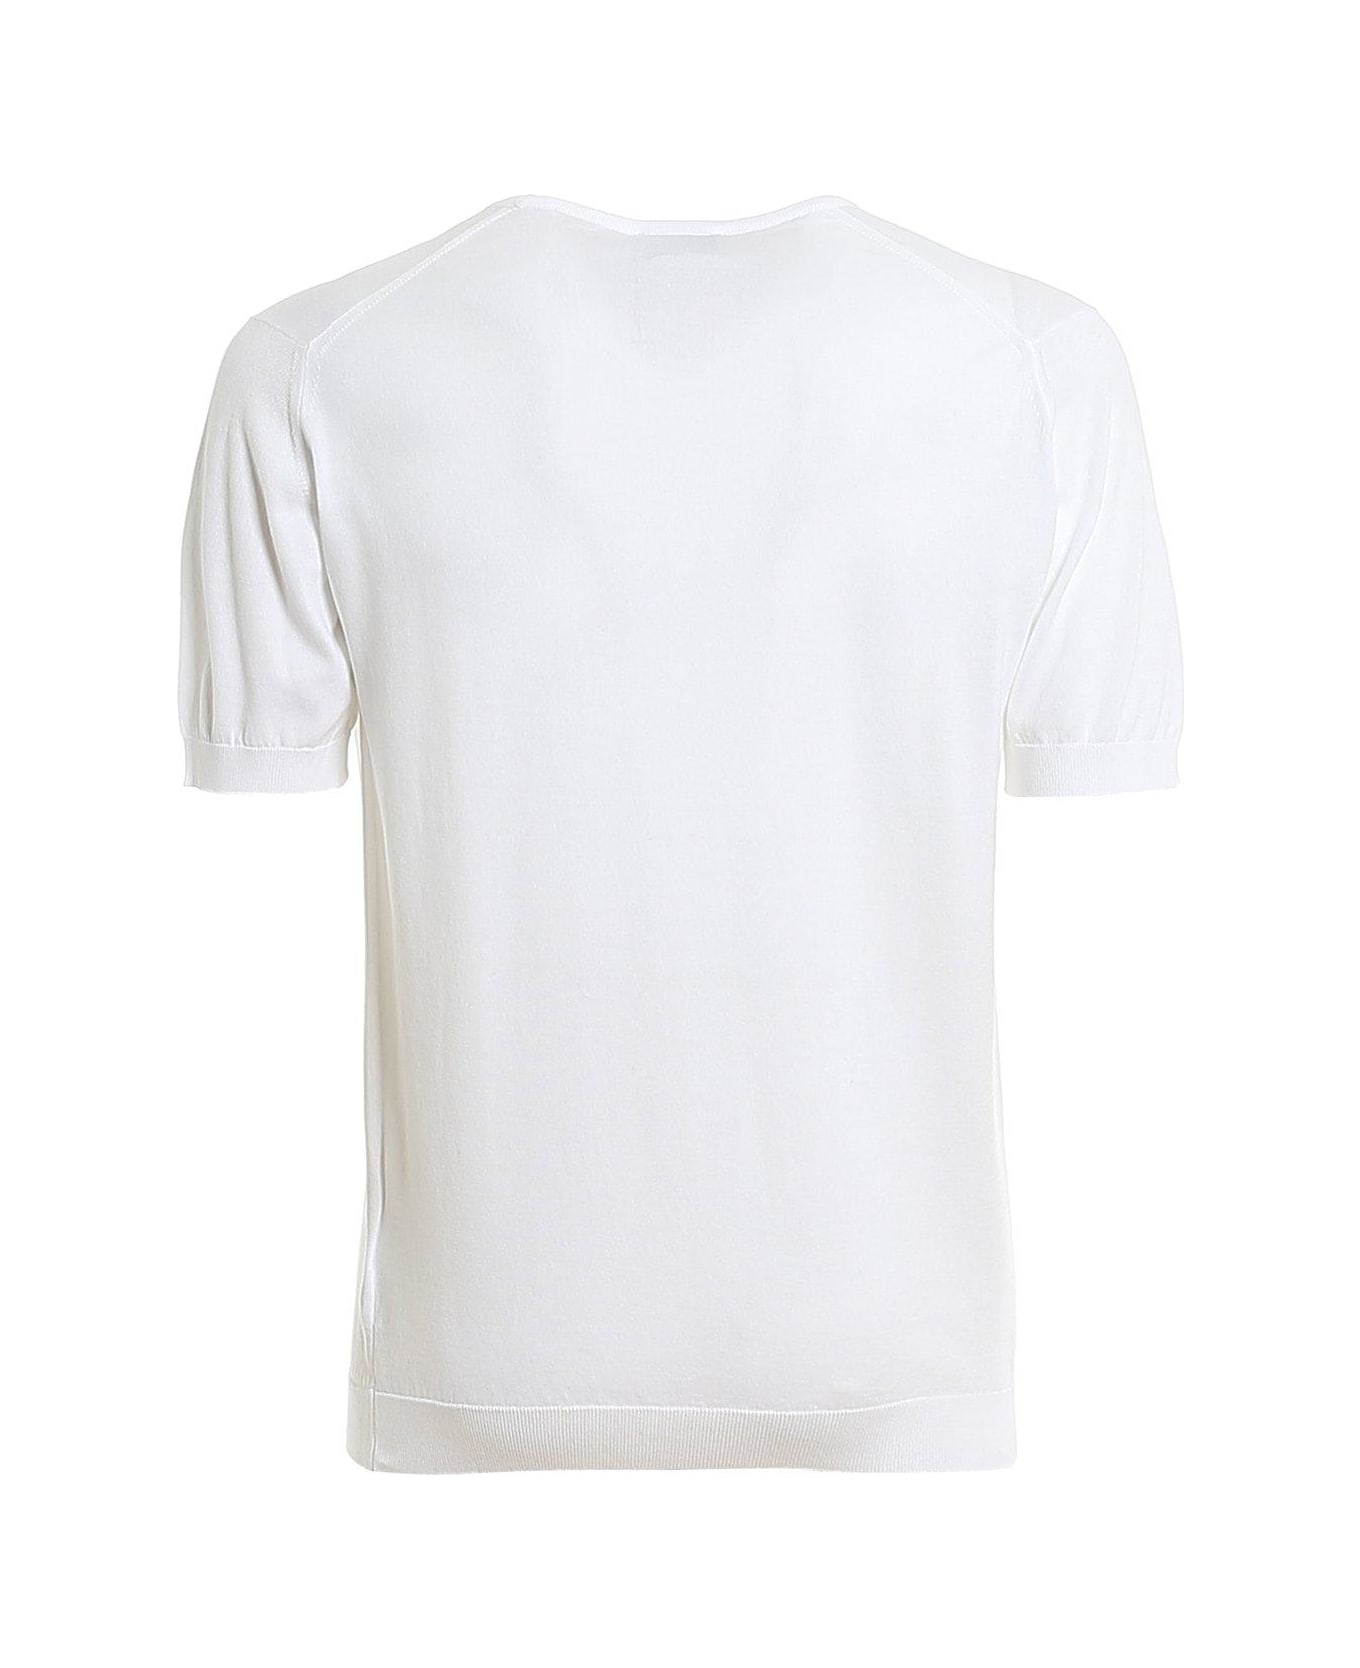 John Smedley Belden Classic T-shirt - WHITE シャツ